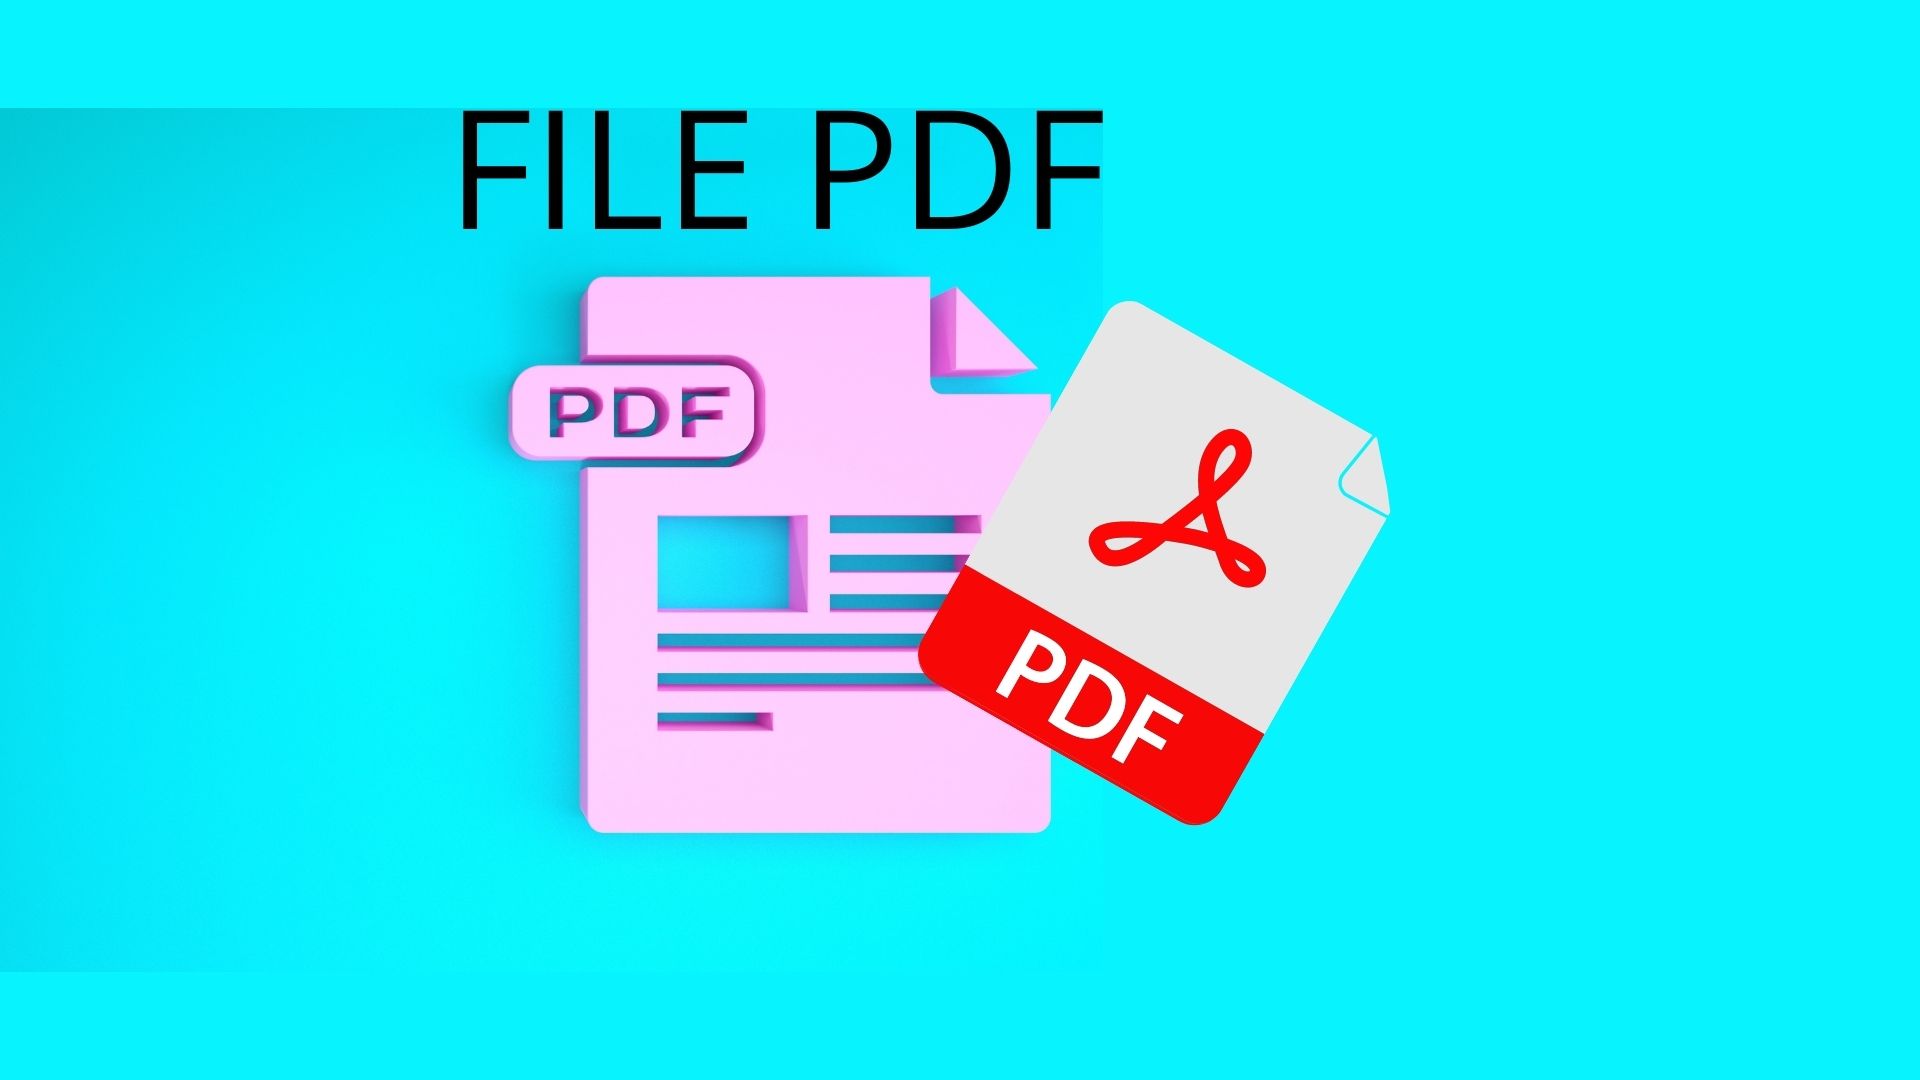 File Pdf Come Modificarli E Come Convertirli Magodelpc 8818